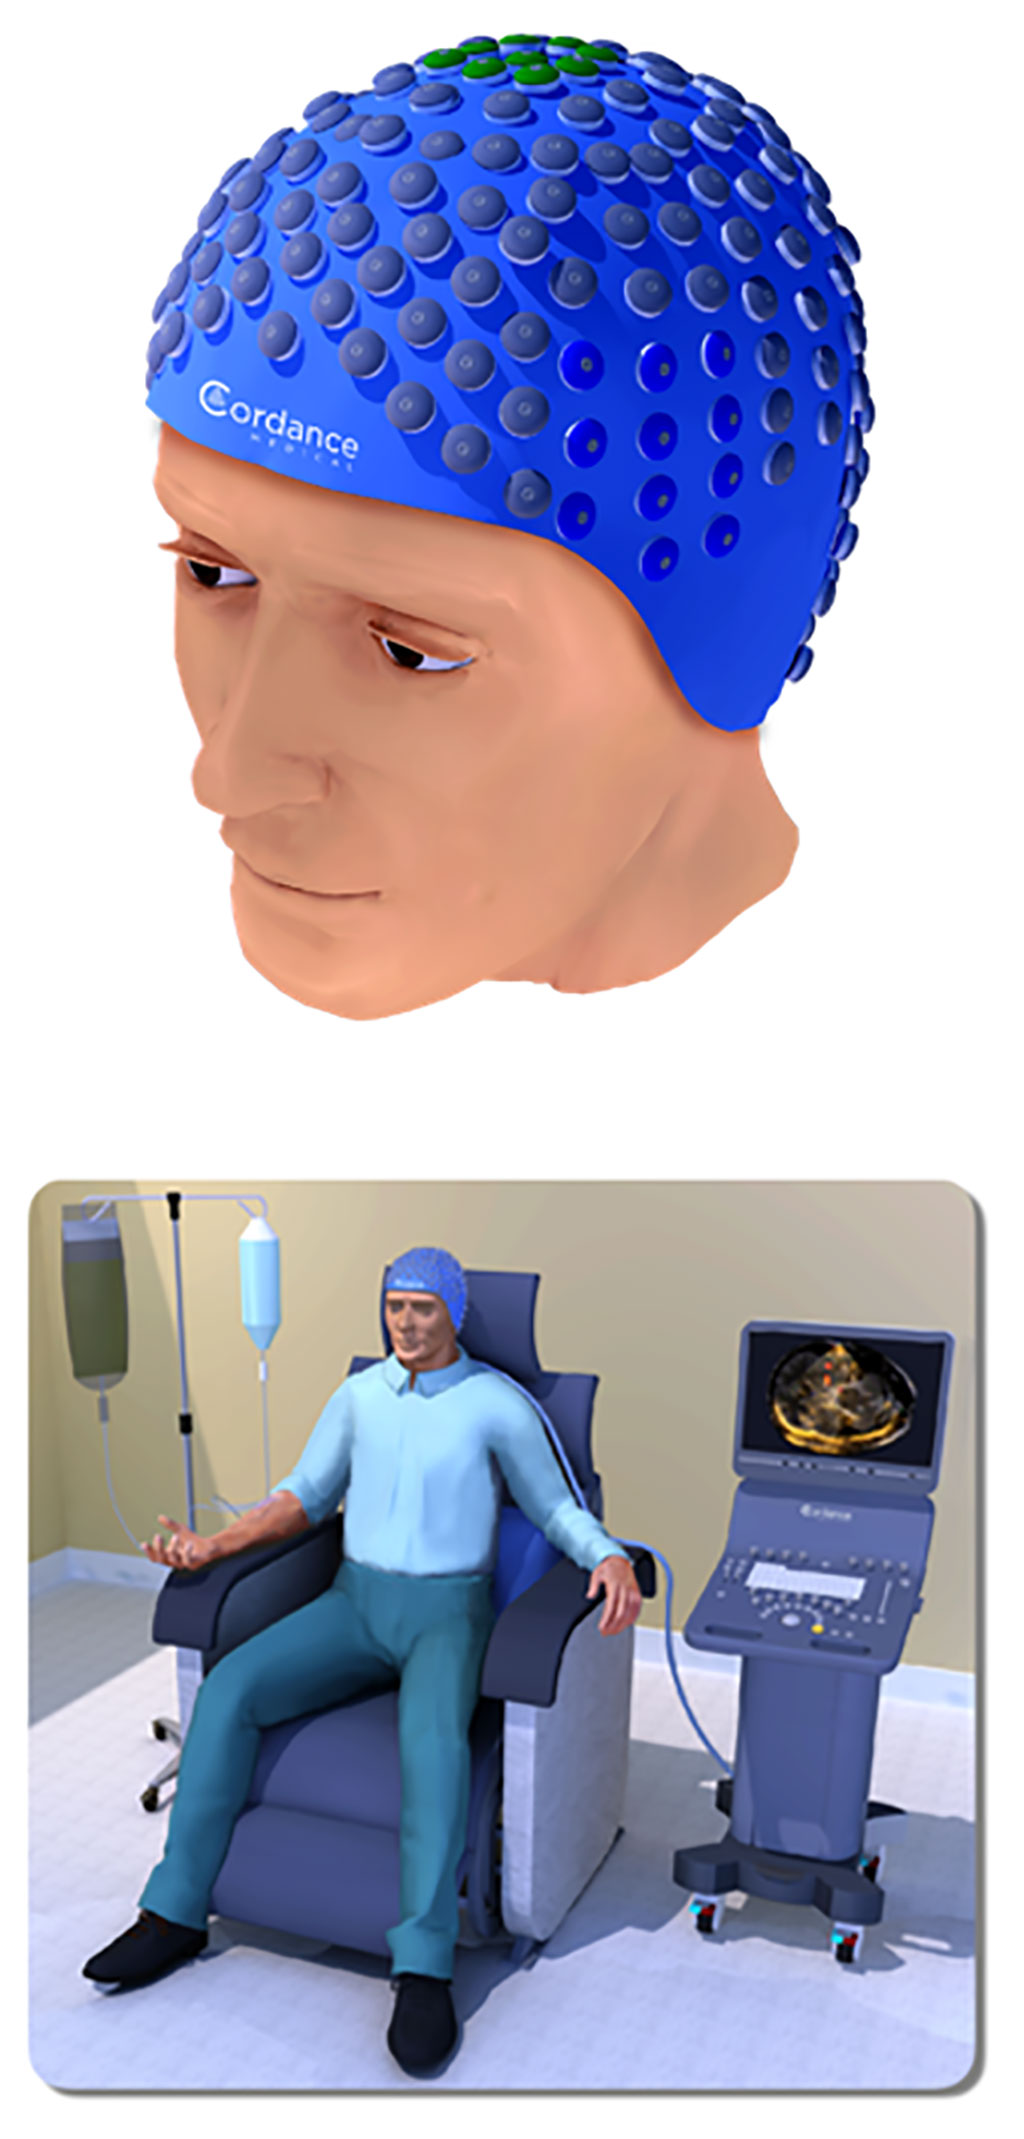 Imagen: El dispositivo NeuroAccess ha recibido la designación de dispositivo innovador de la FDA para biopsia líquida en tumores cerebrales (Fotografía cortesía de Cordance Medical)